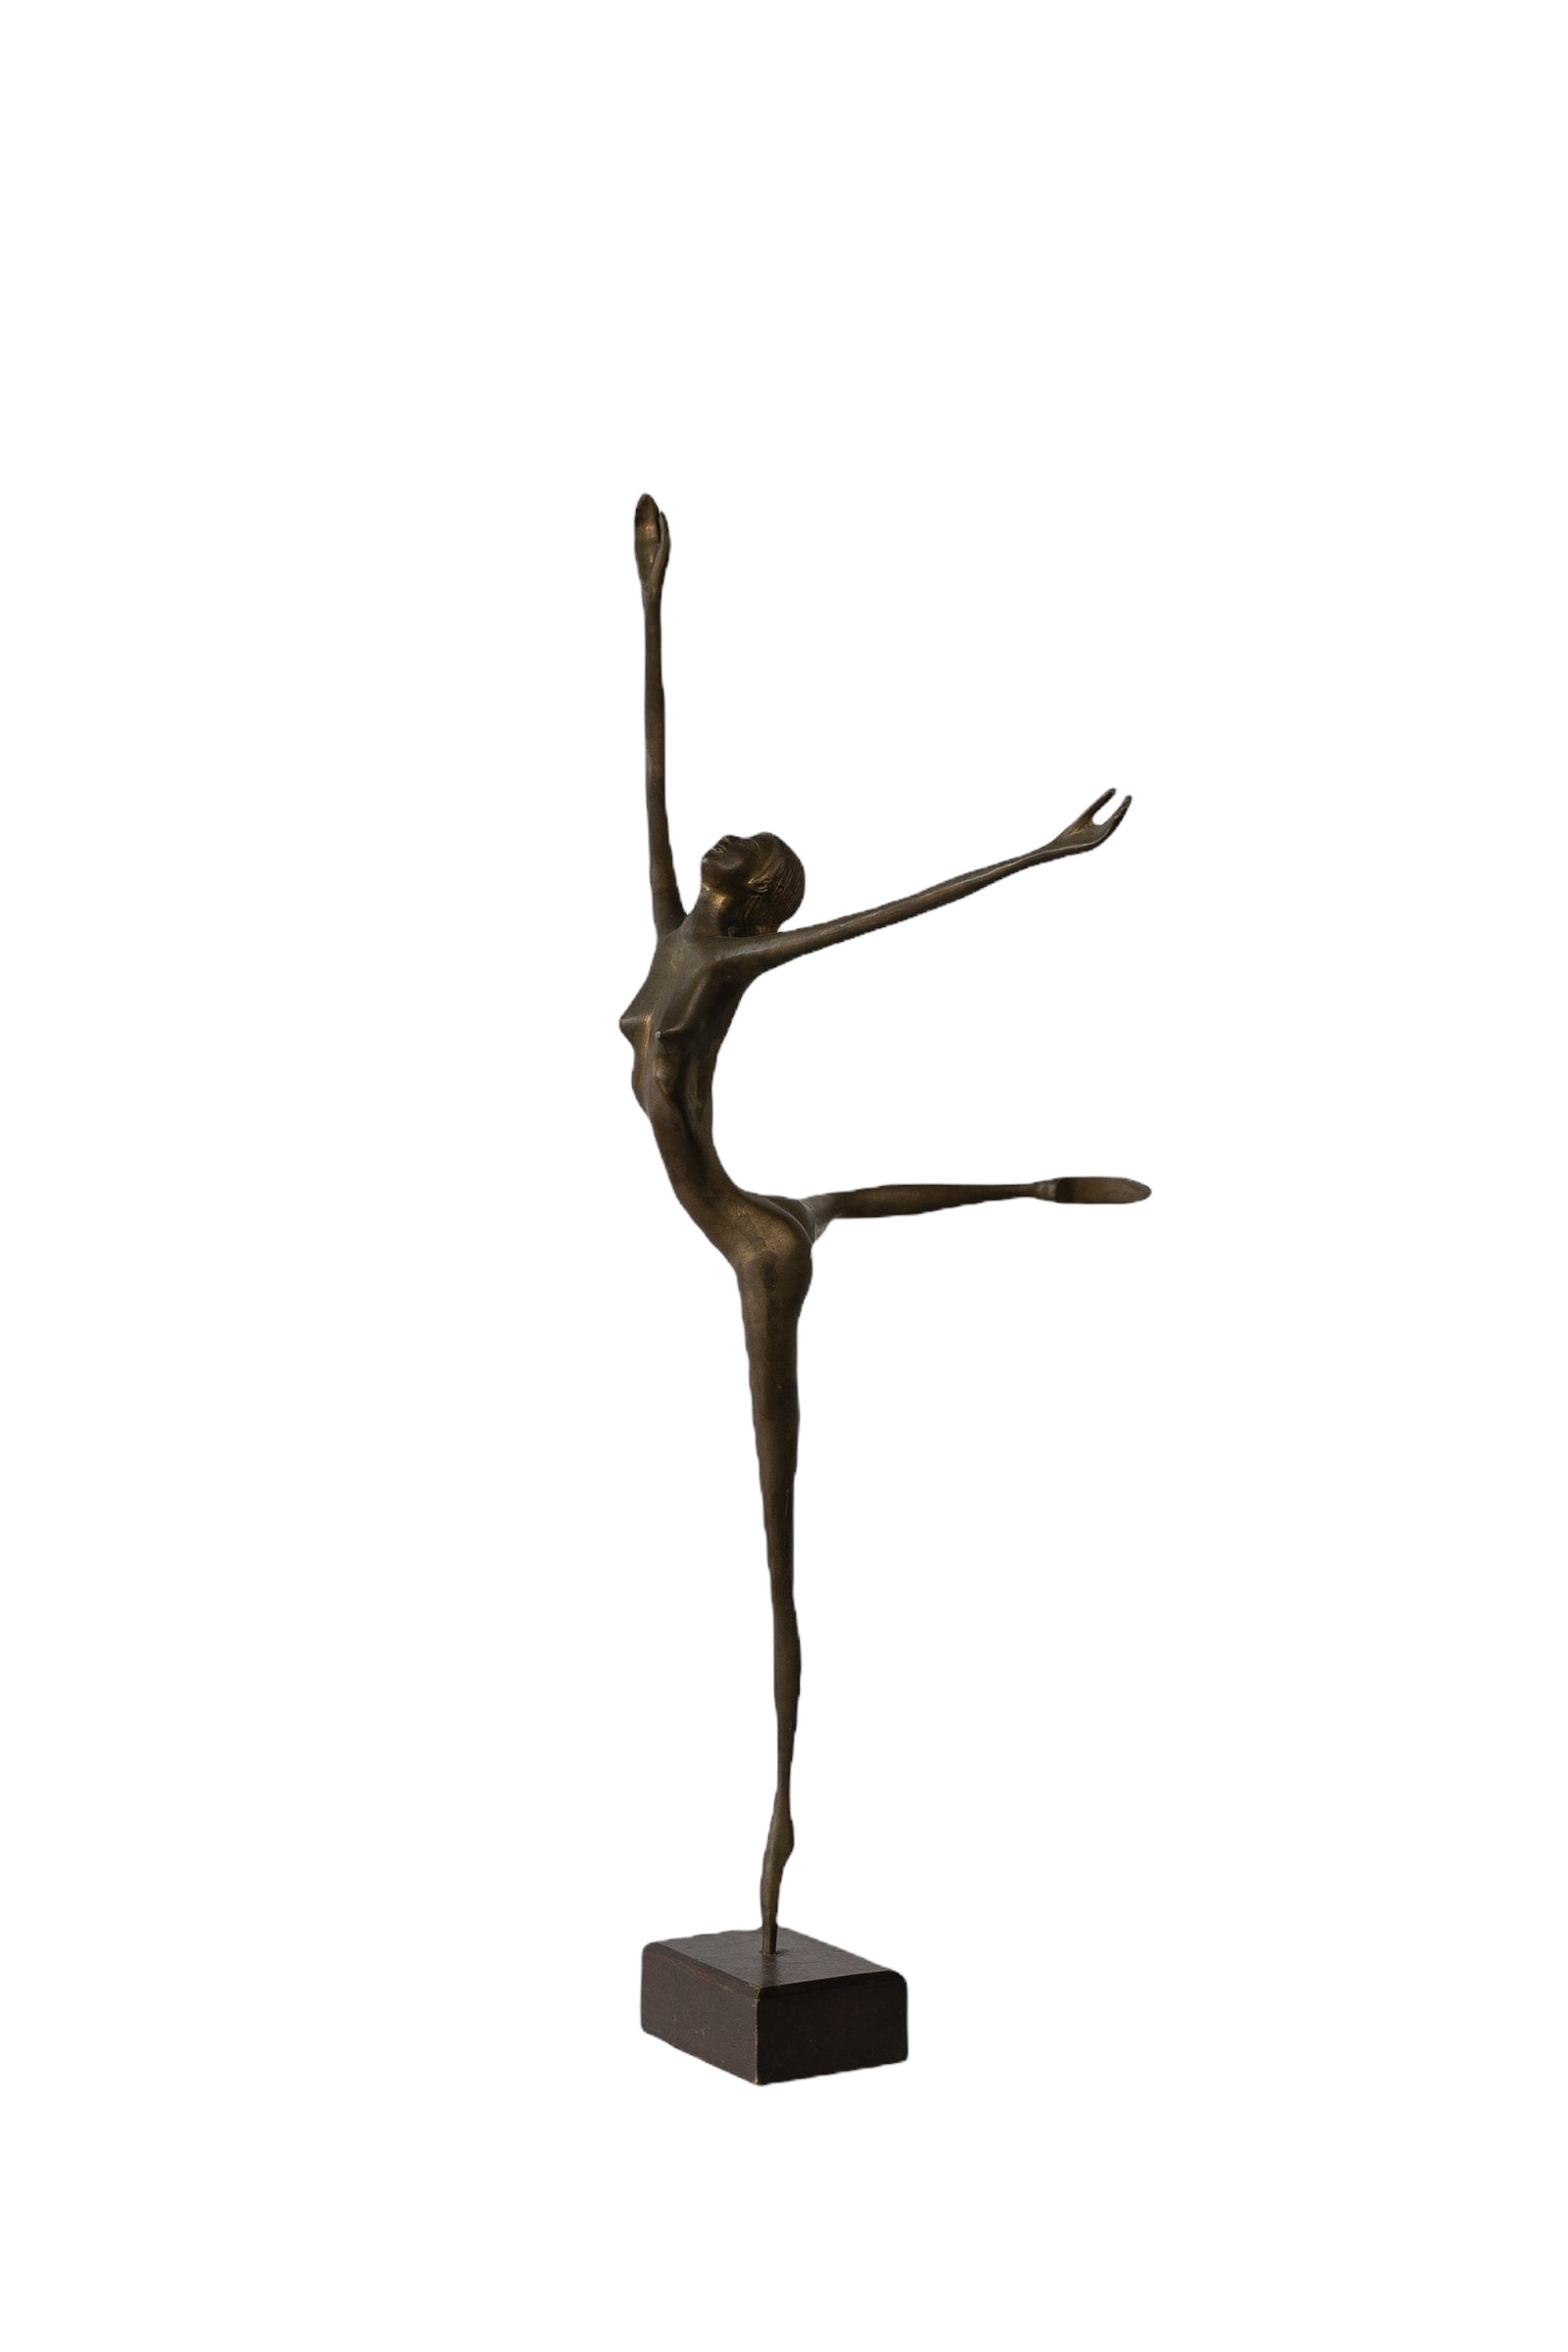 Vintage Brass Ballerina Ballet Dancer Figurine a Pair – Made By